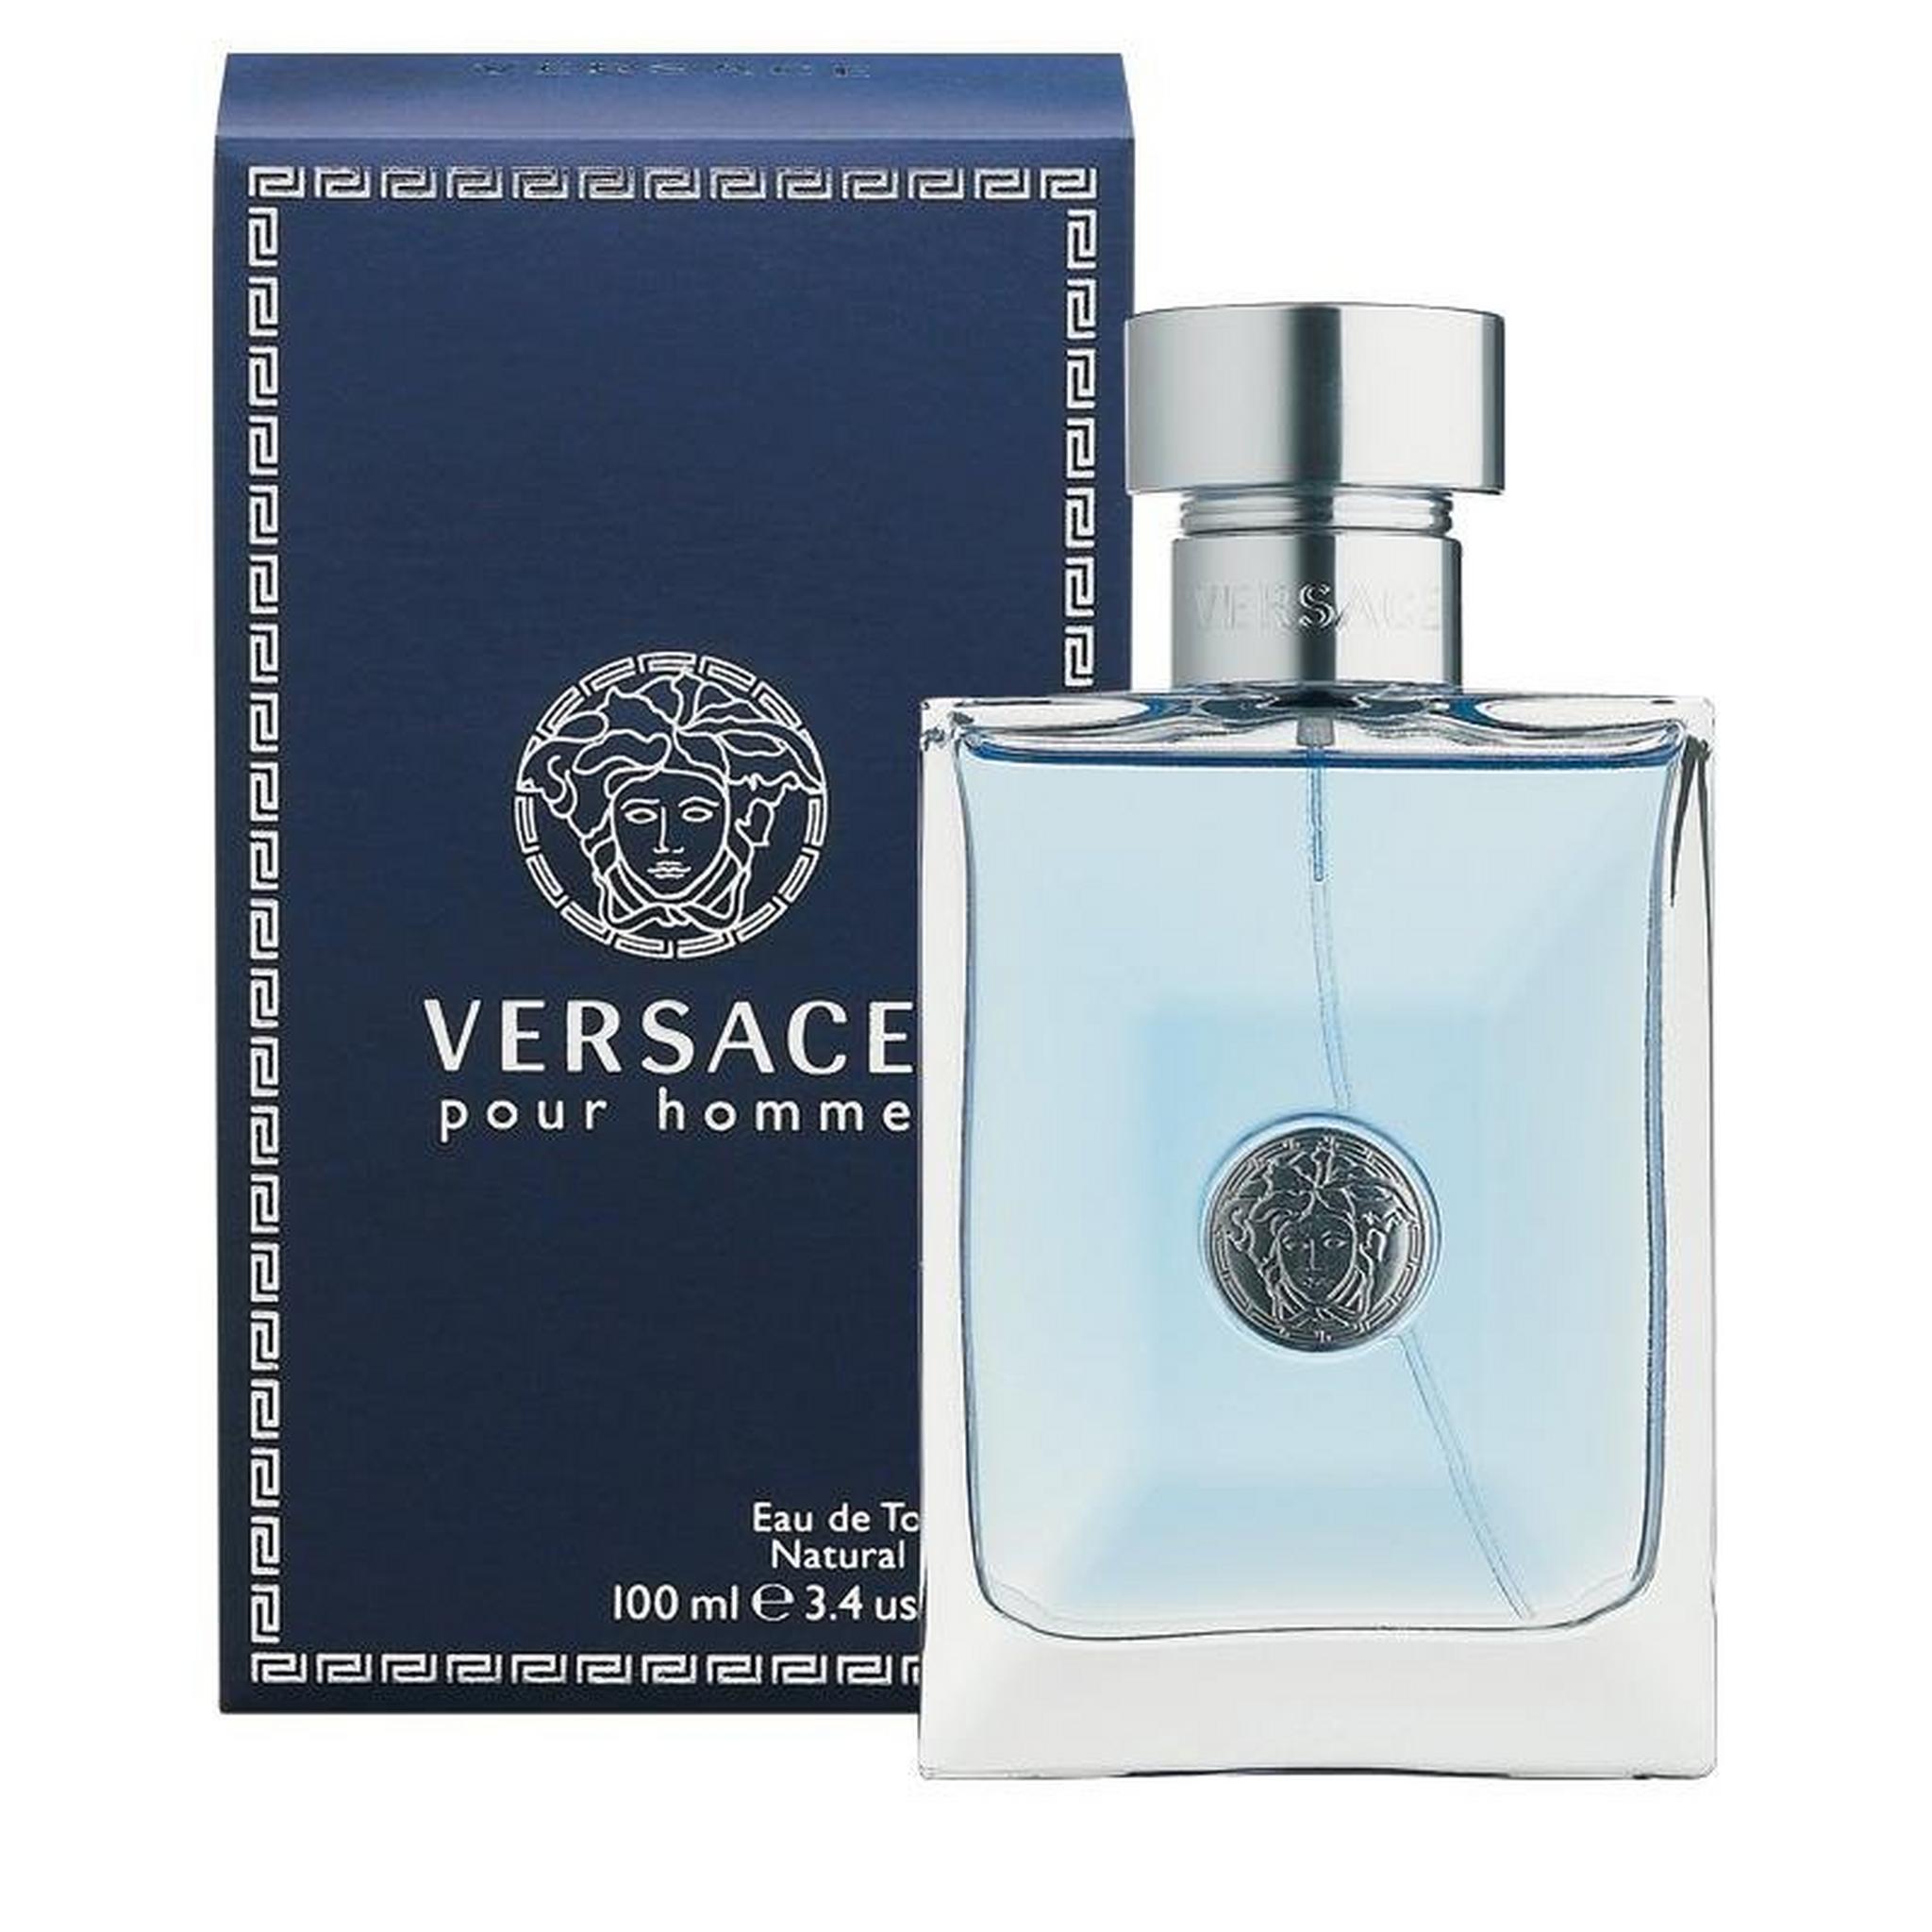 Versace Pour Homme by Versace for Men 100 mL Eau de Toilette